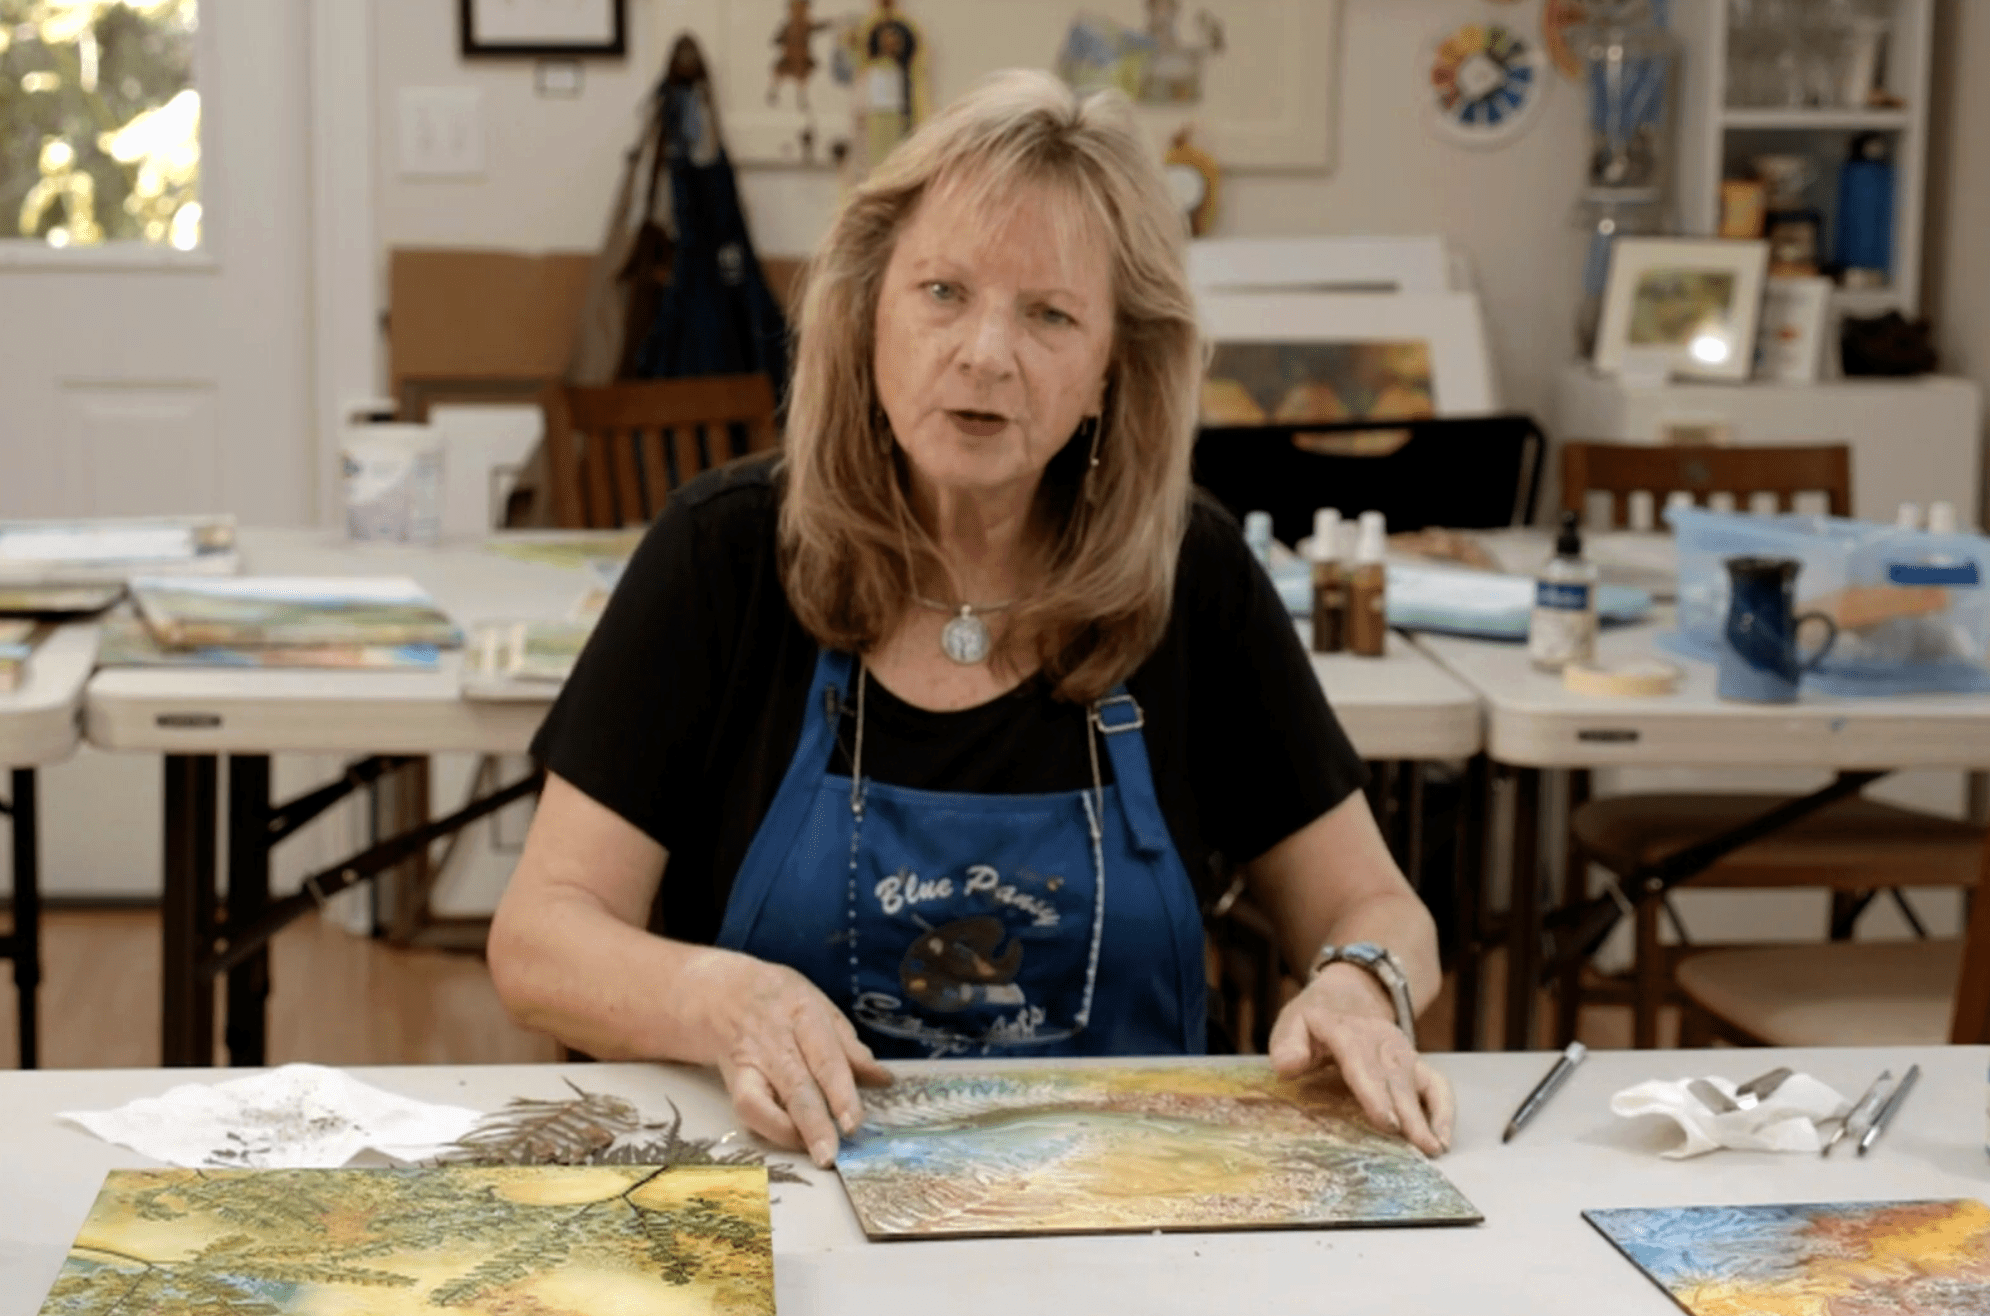 Anji Grainger teaches in a free online art lesson for children